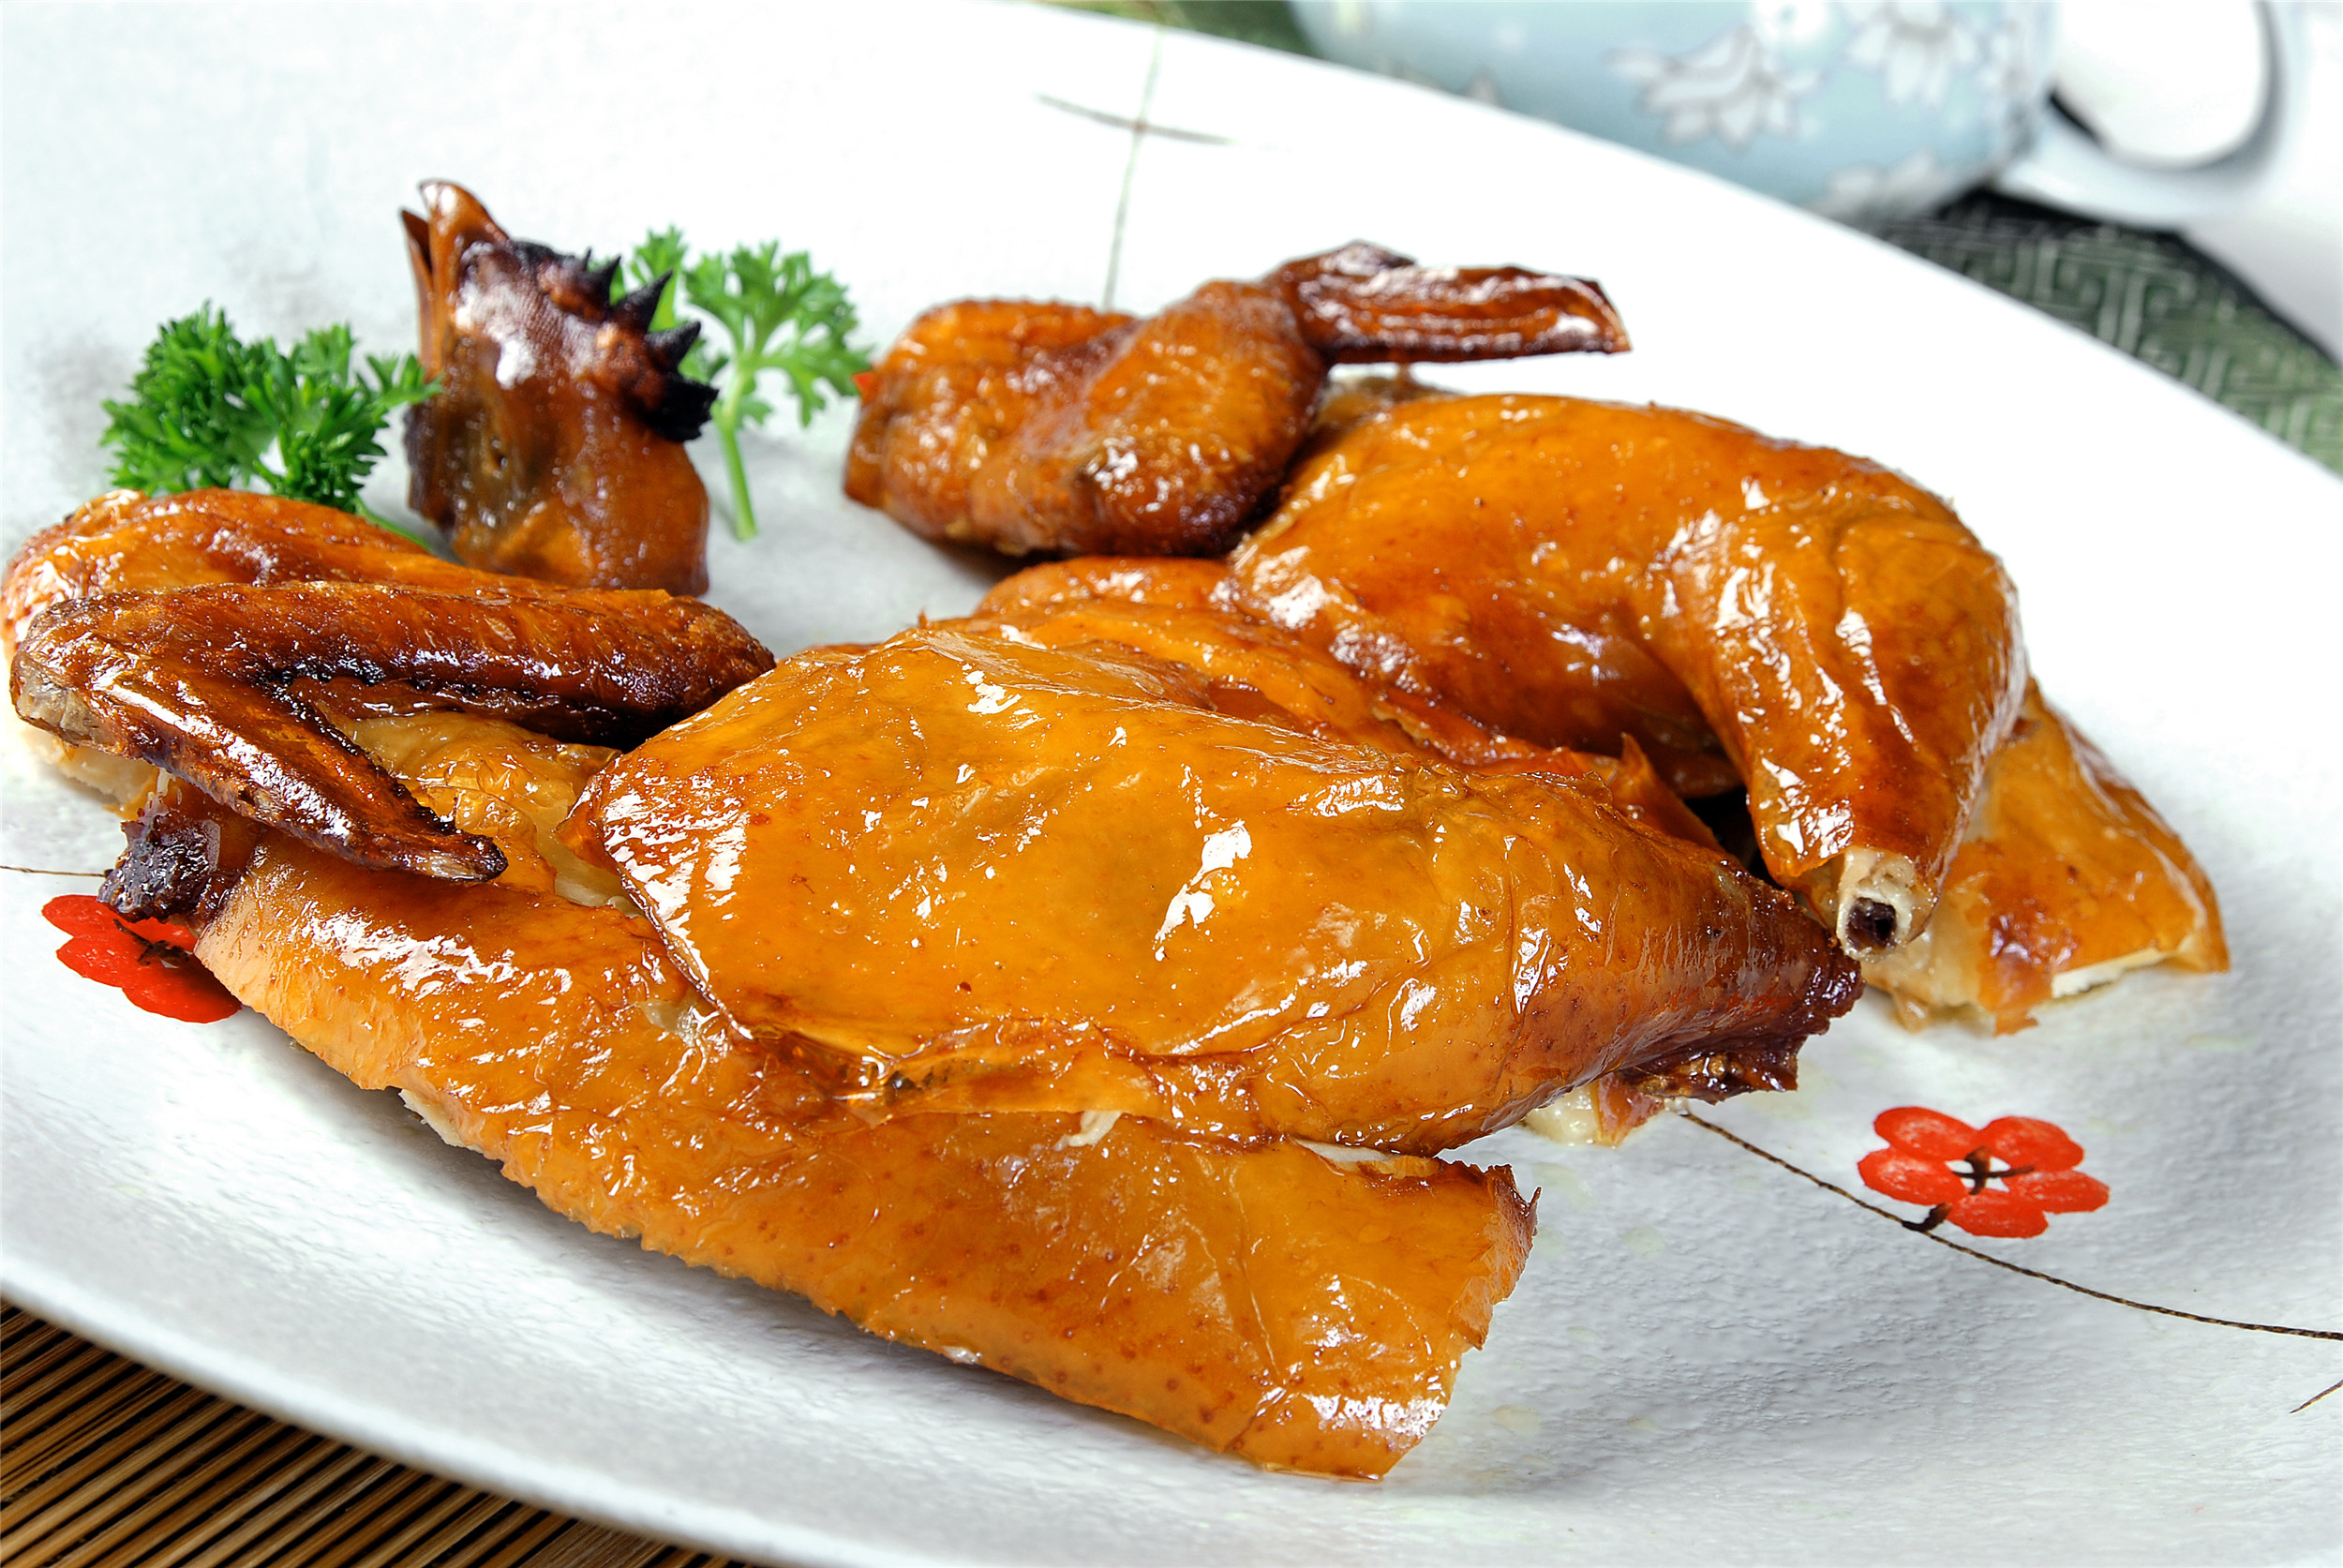 炭烧鸡:鸡,是人们餐桌上的常客,其味道更是深受大家的喜爱